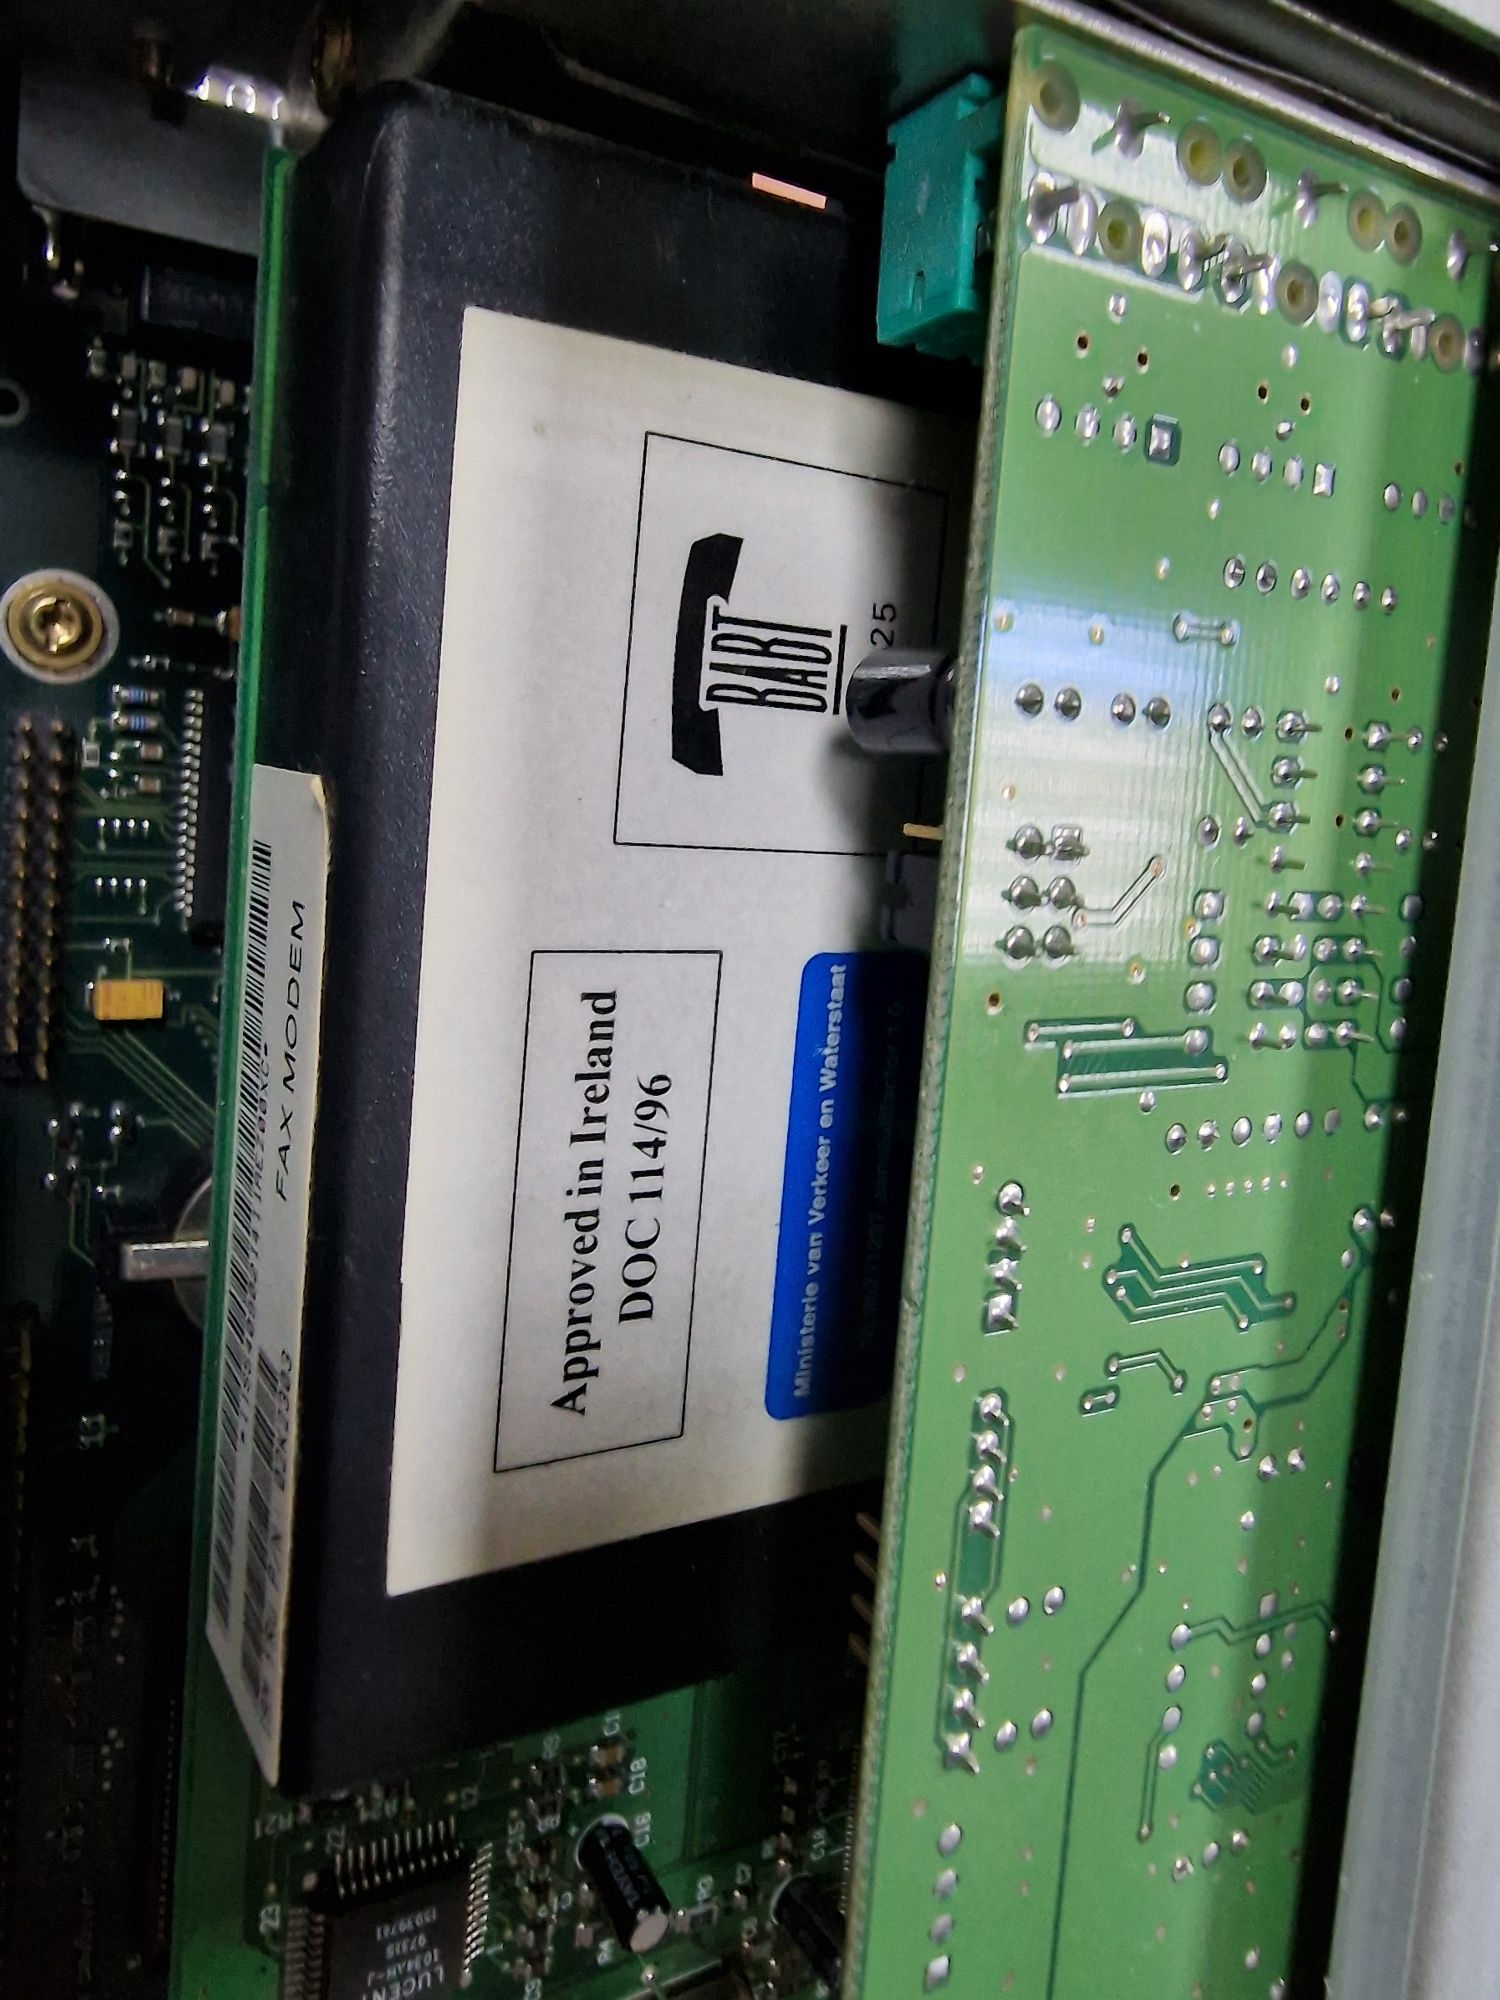 Siemens Nixdorf Pentium 1(100mhz) vintage/retro